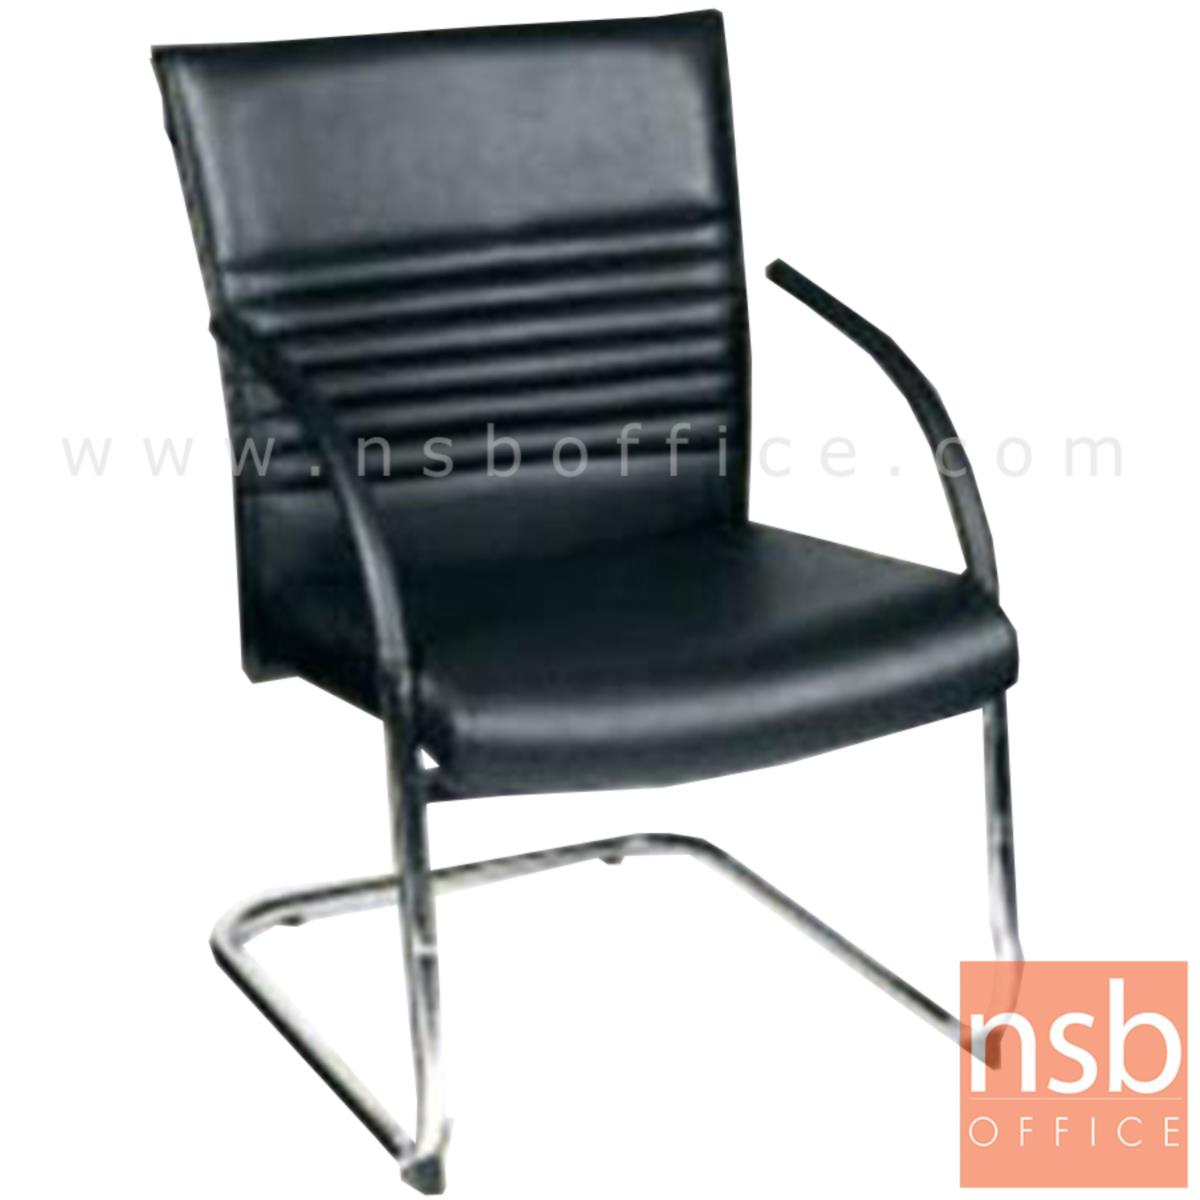 B04A025:เก้าอี้รับแขกขาตัวซี รุ่น Daylan (เดย์แลน)  ขาเหล็กชุบโครเมี่ยม